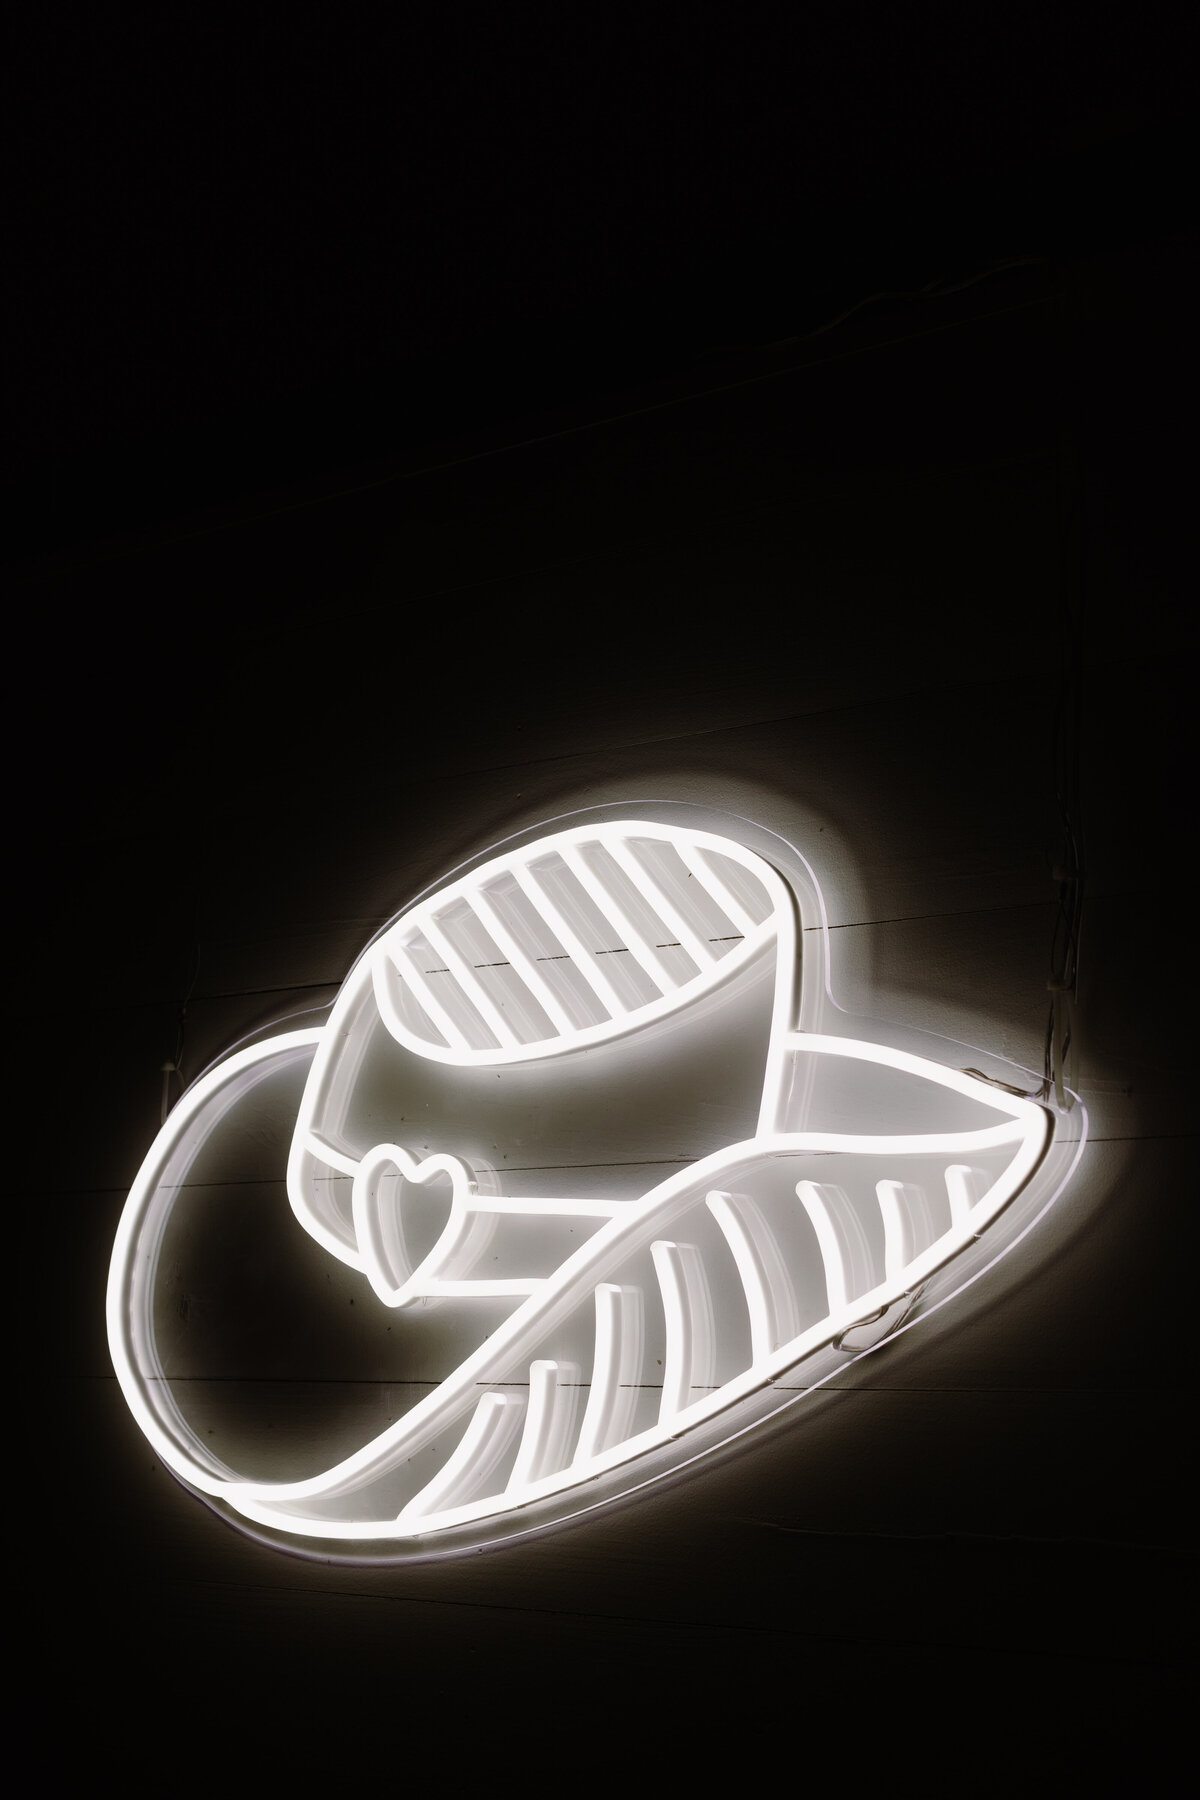 Illuminated cowboy hat